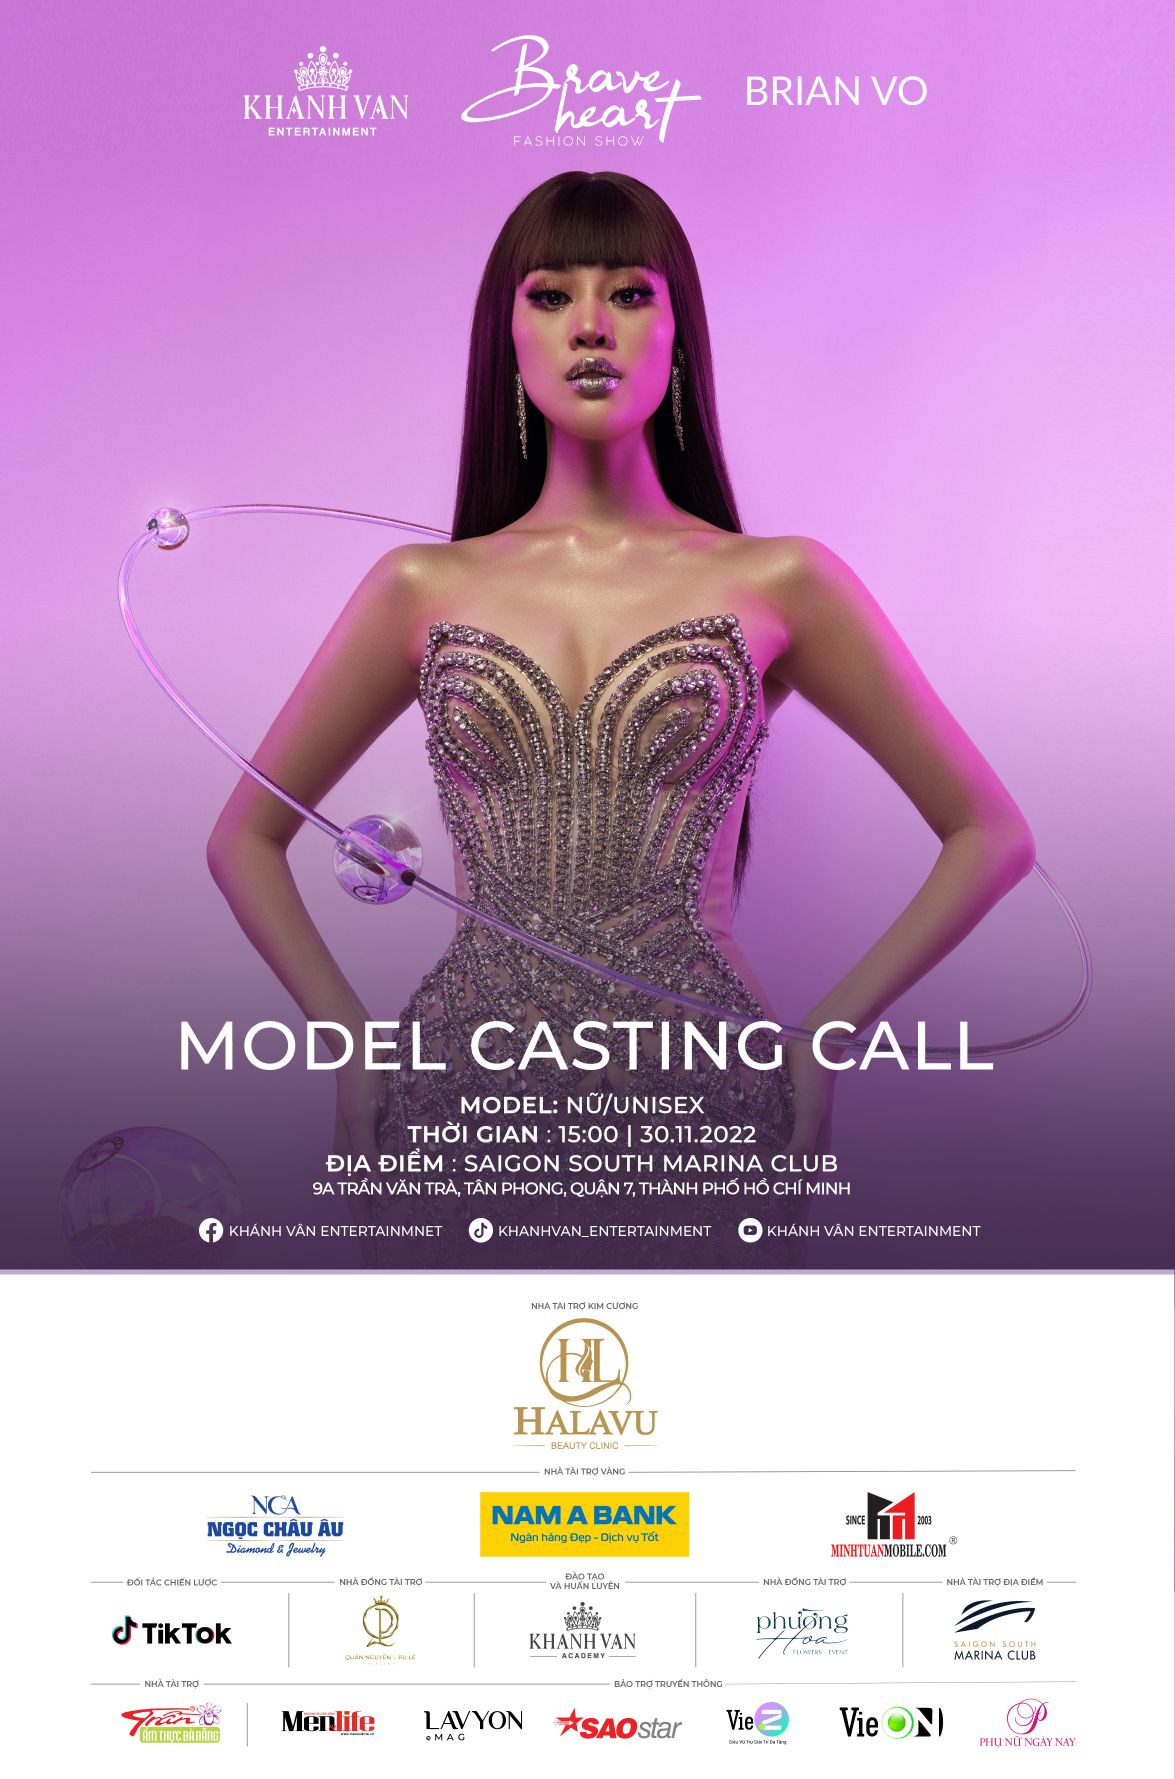 Casting Call NTK Brian Vo Khánh Vân tuyển chọn người mẫu trình diễn cho Brave Heart Fashion Show 2022